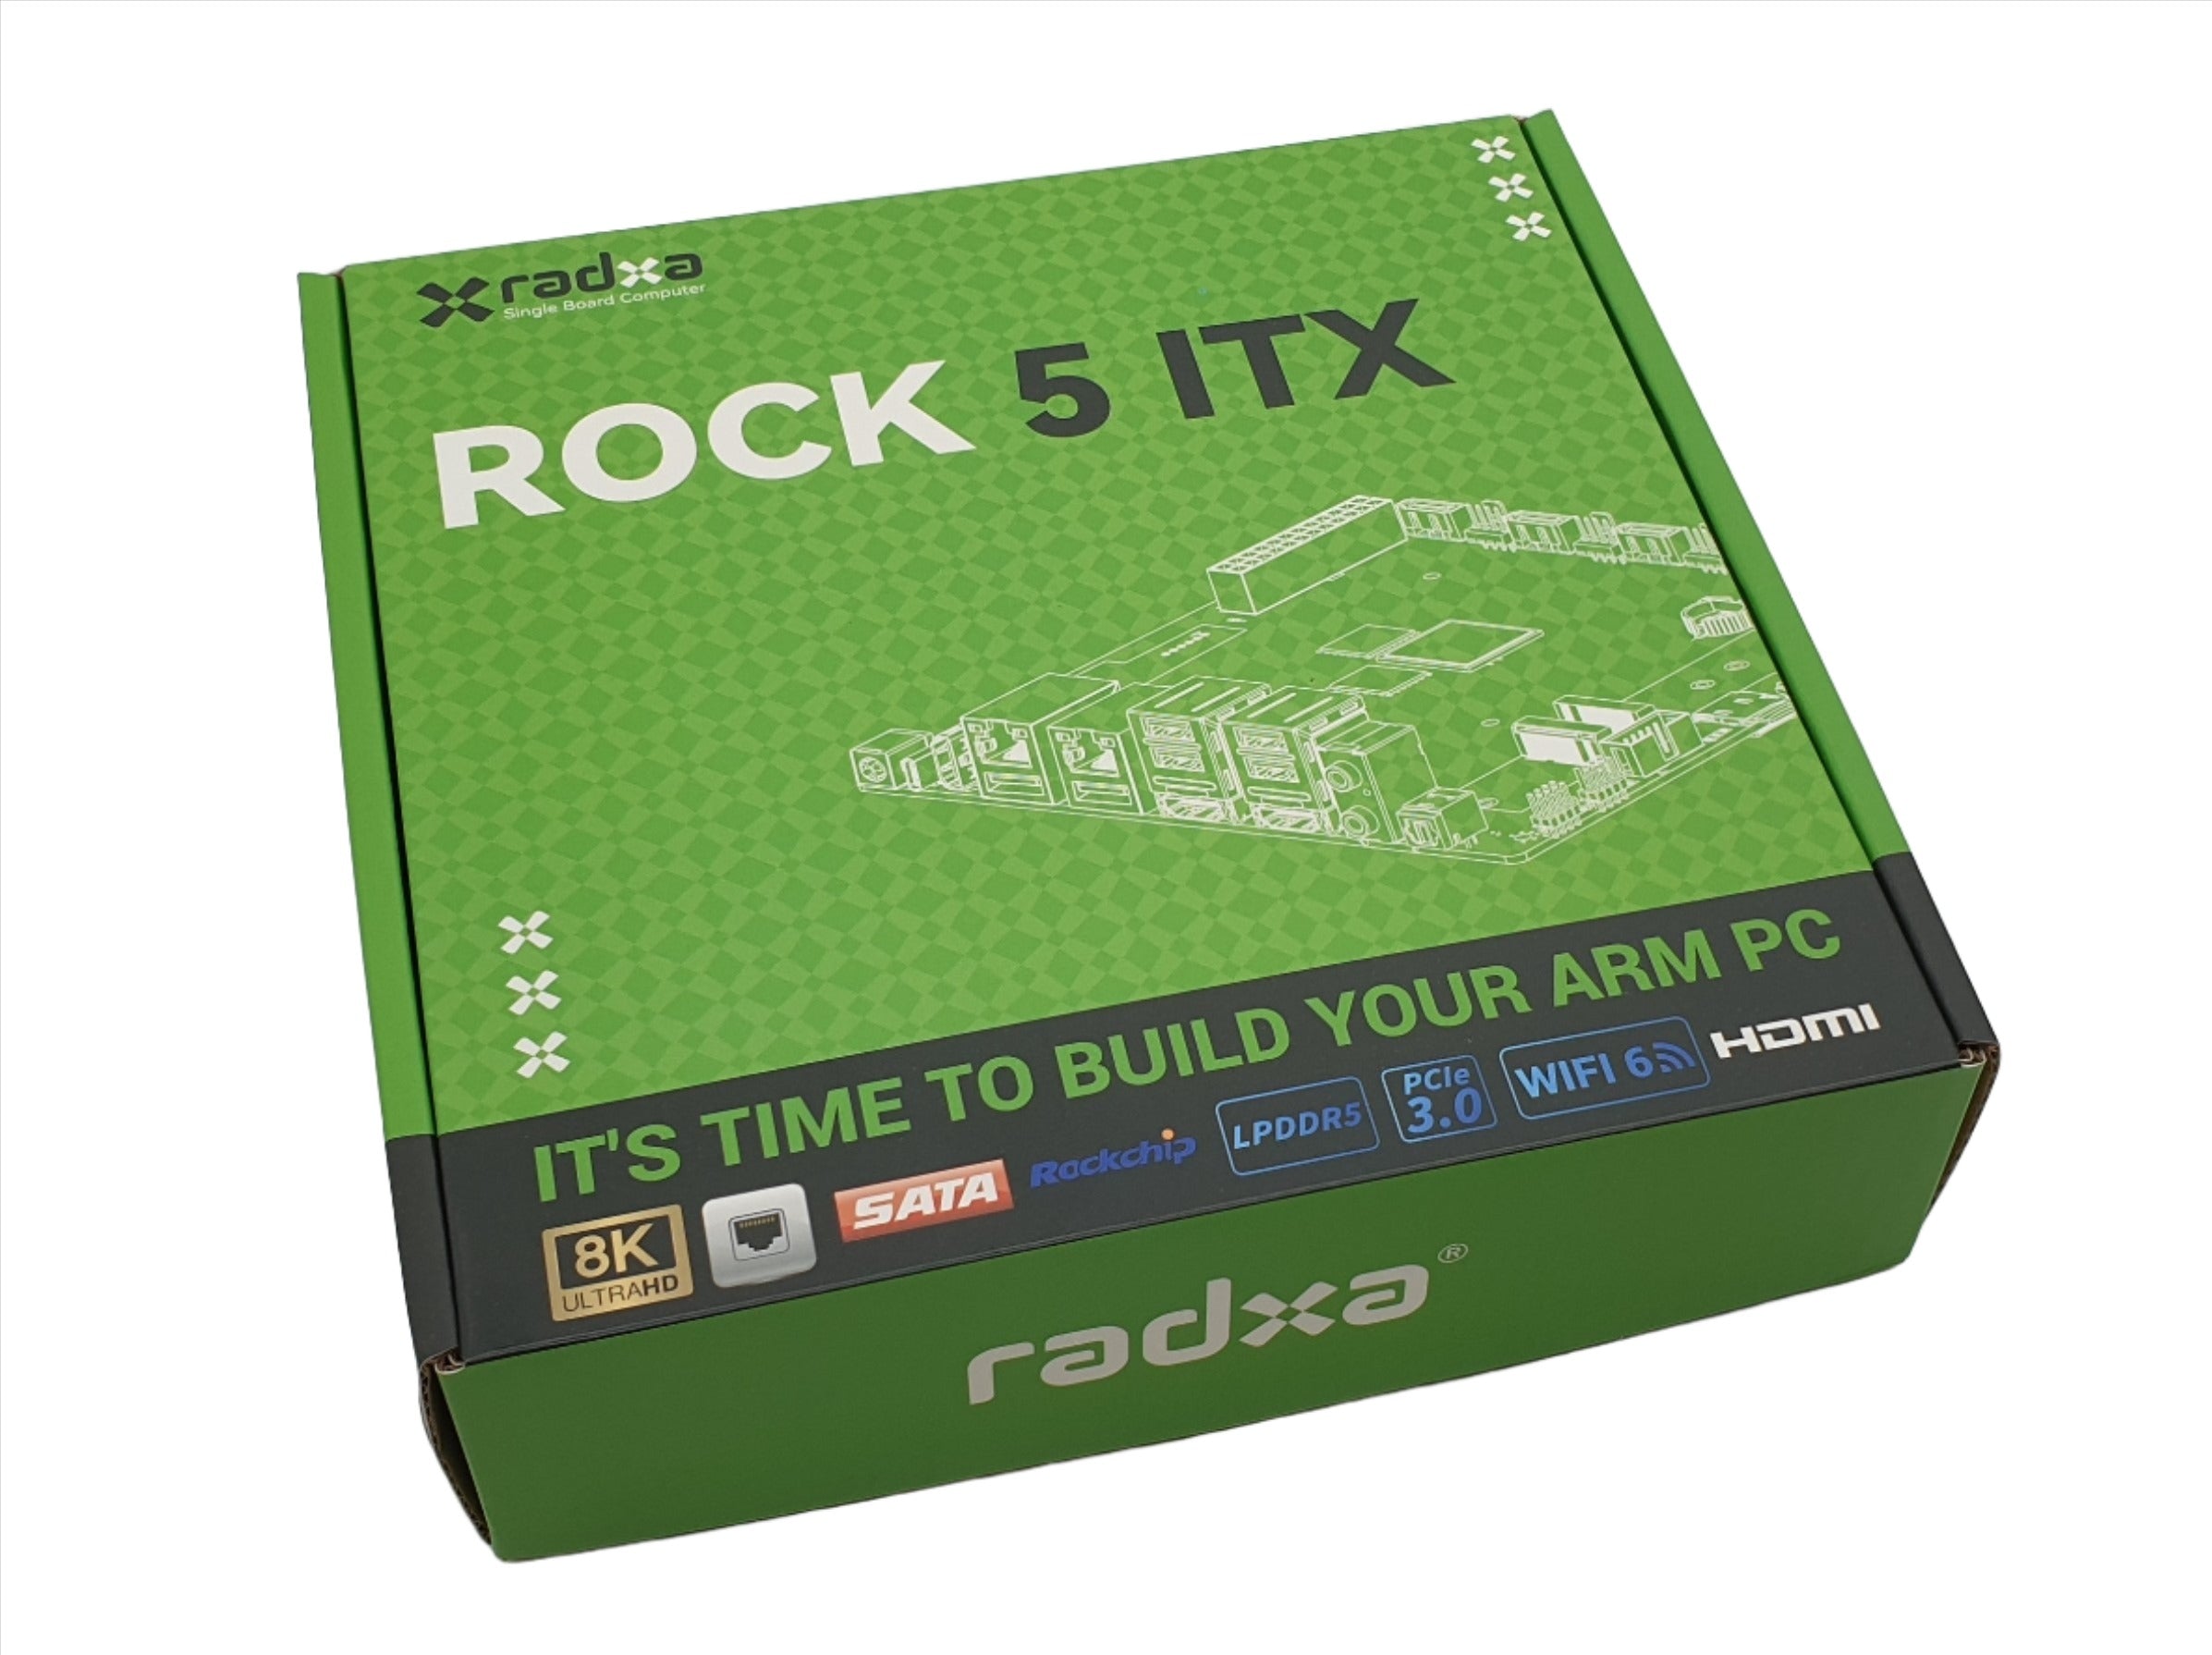 Rock 5 ITX